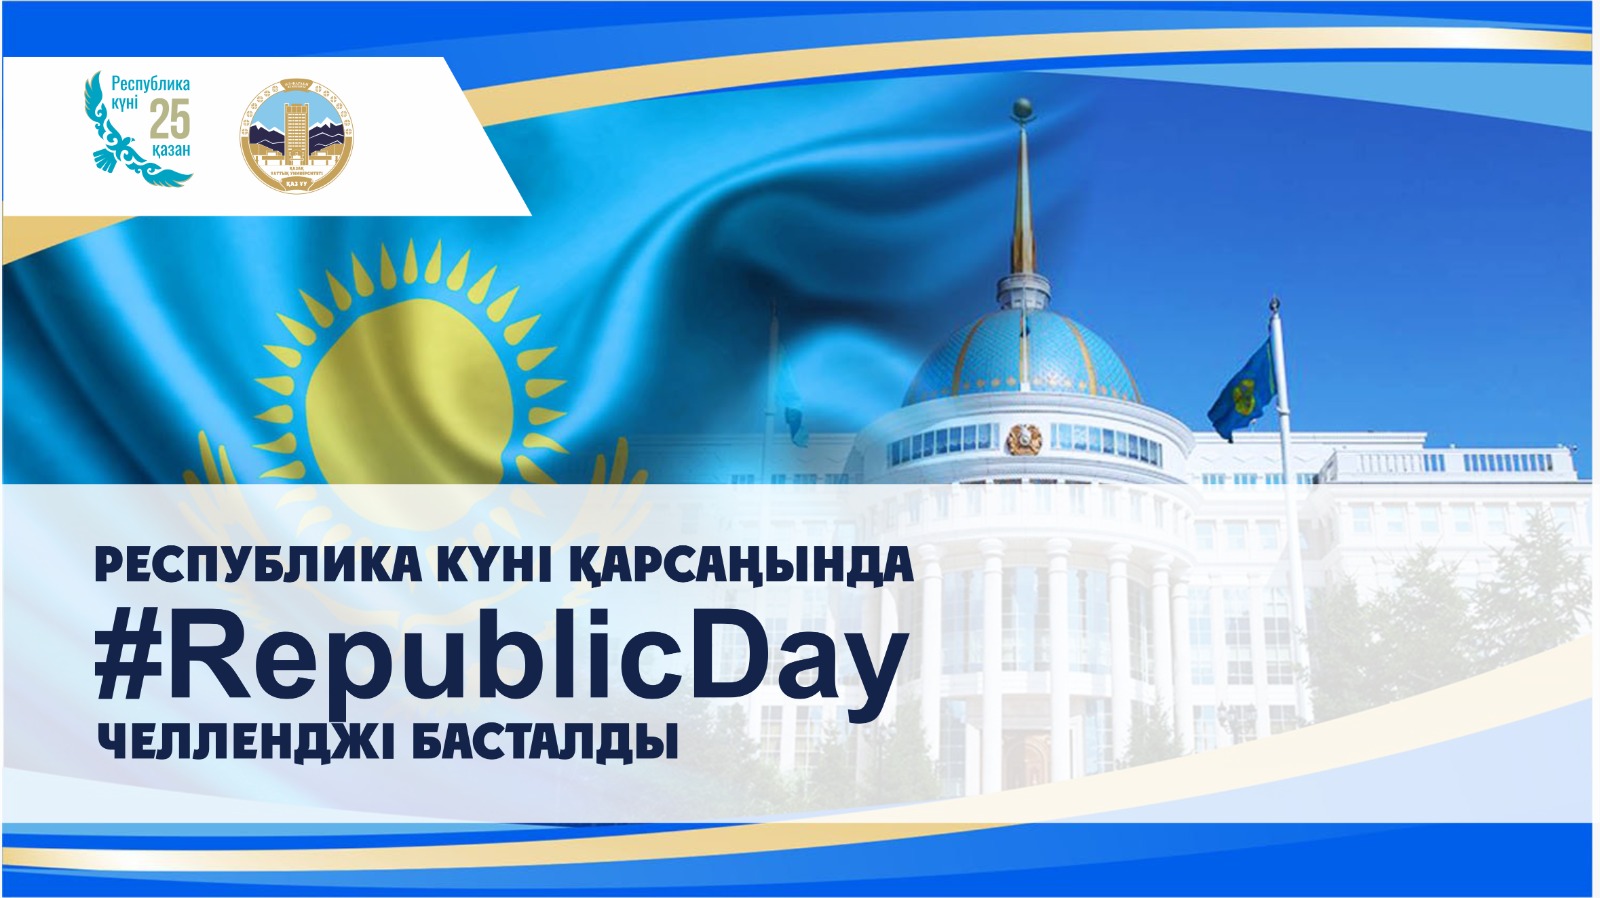 В преддверии Дня Республики стартовал челлендж #RepublicDay